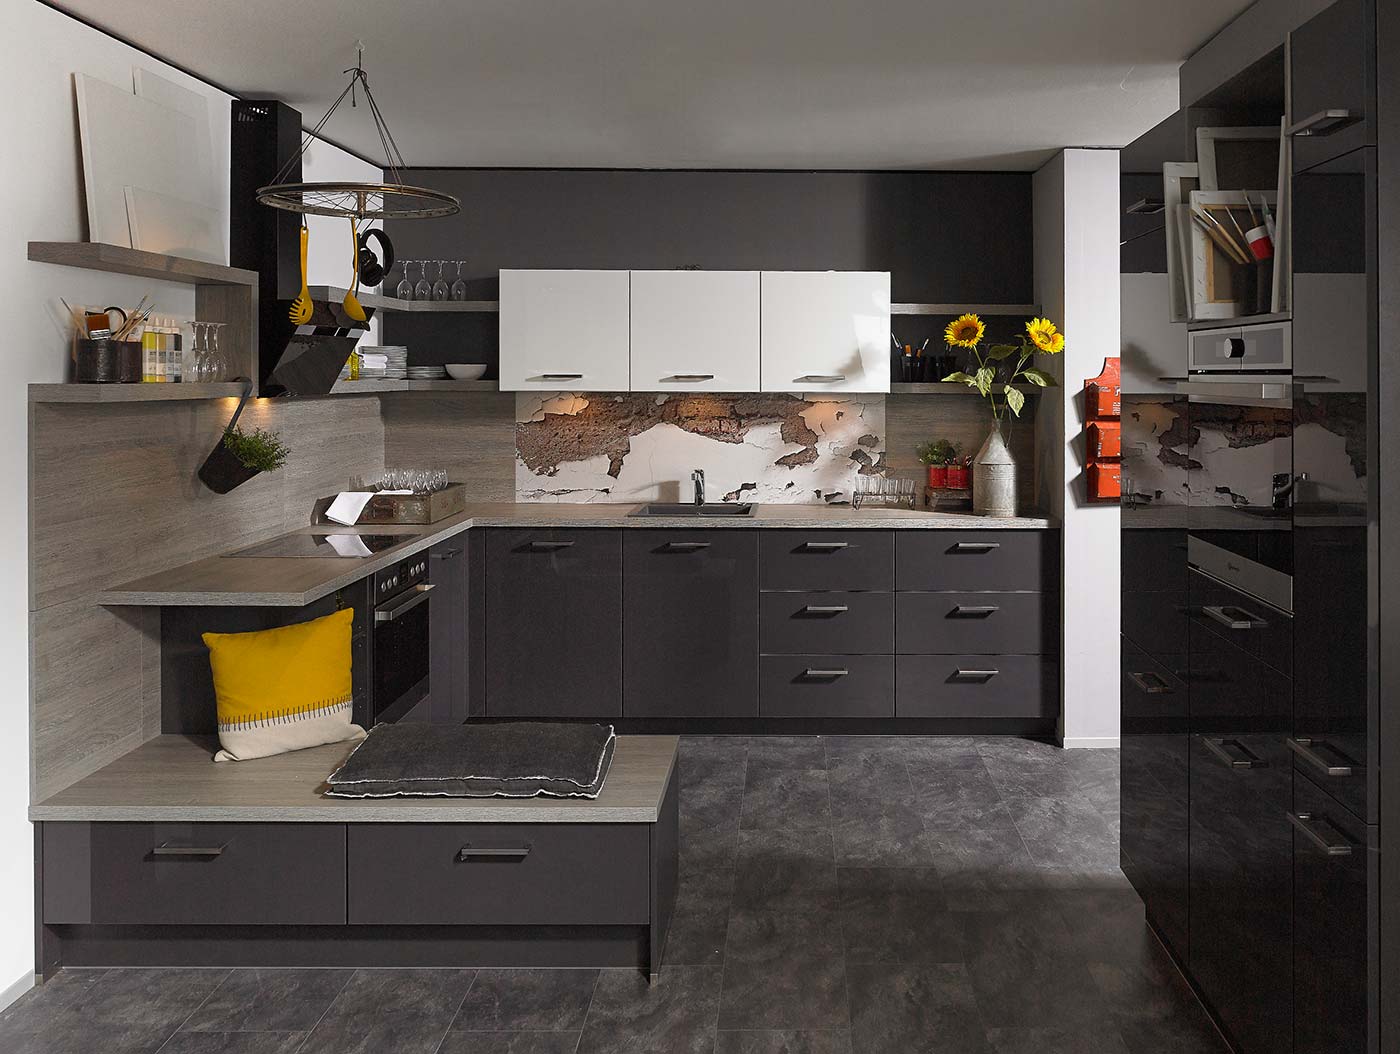 REDDY Küchen modern dunkel Arbeitsplatte Marmor